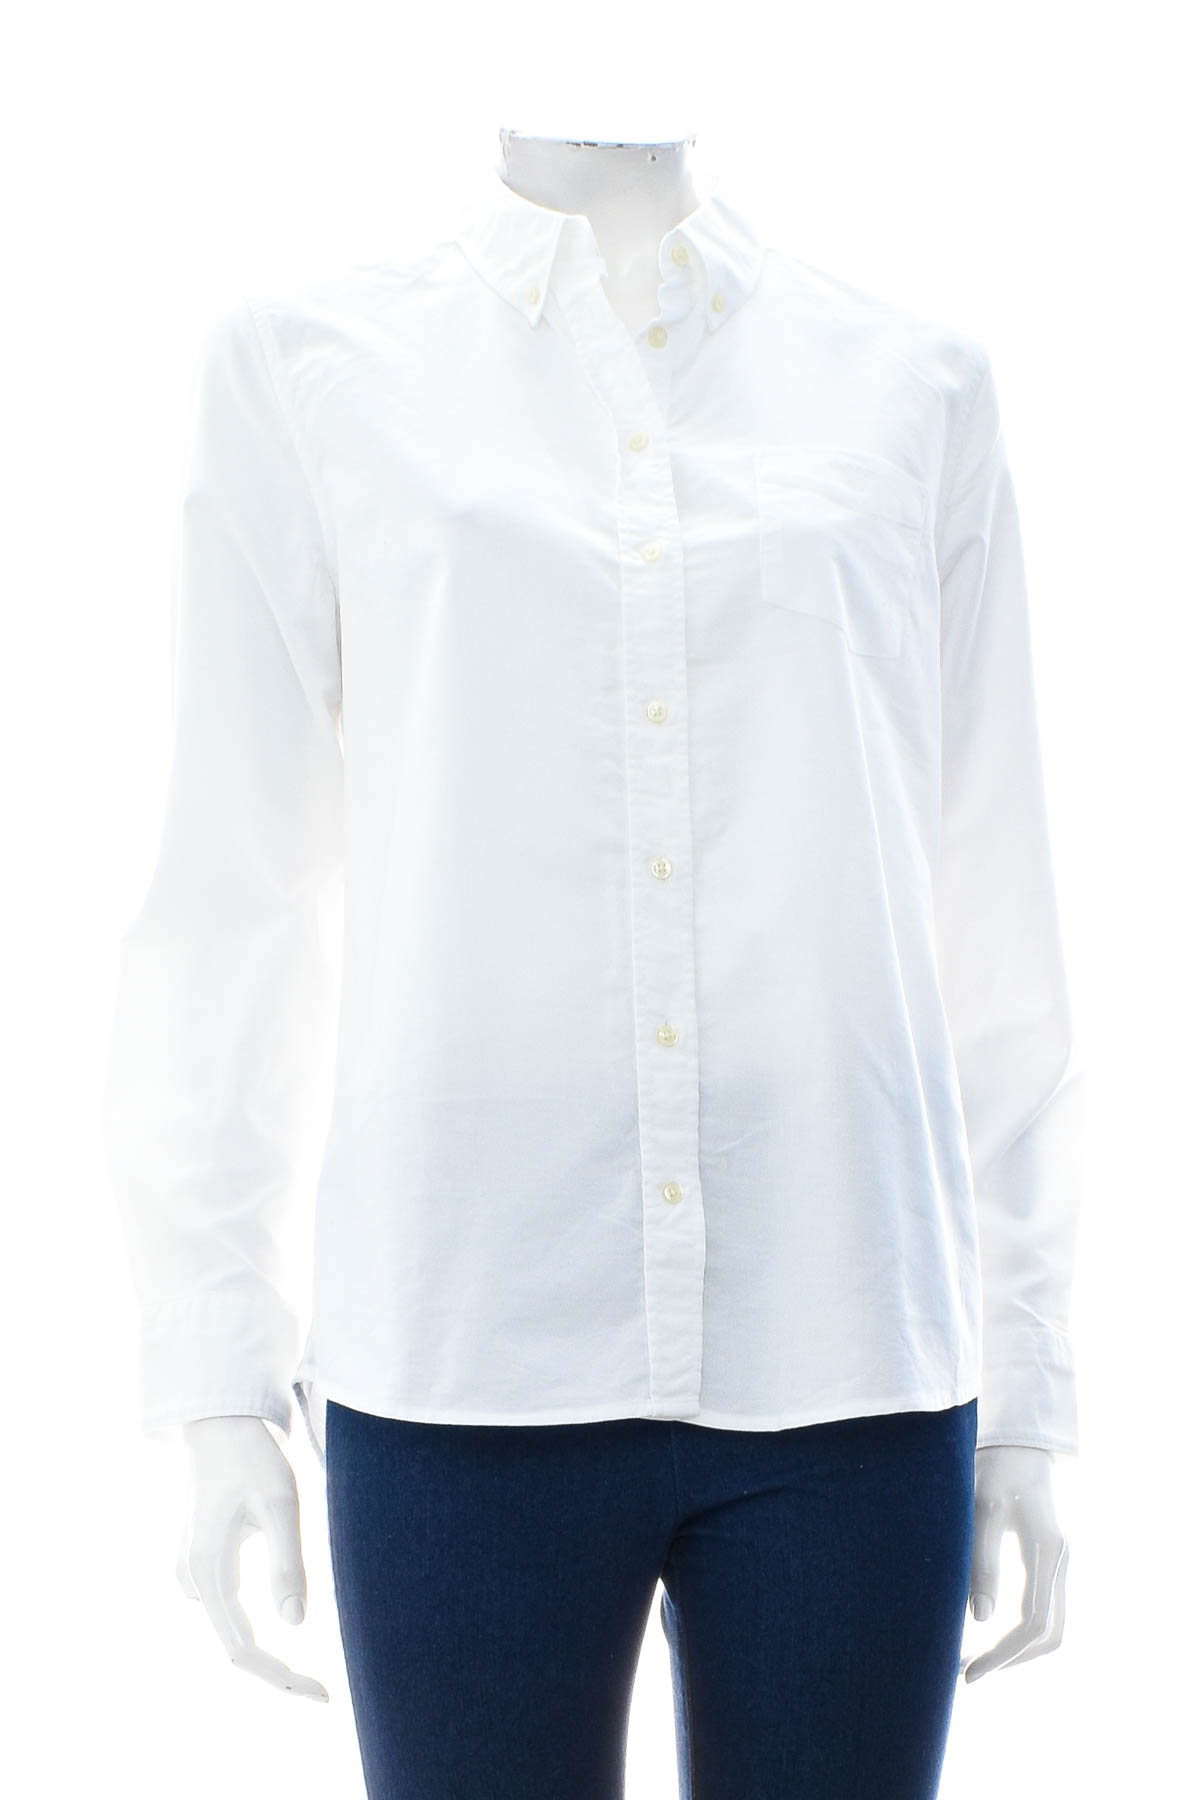 Γυναικείо πουκάμισο - Gant - 0